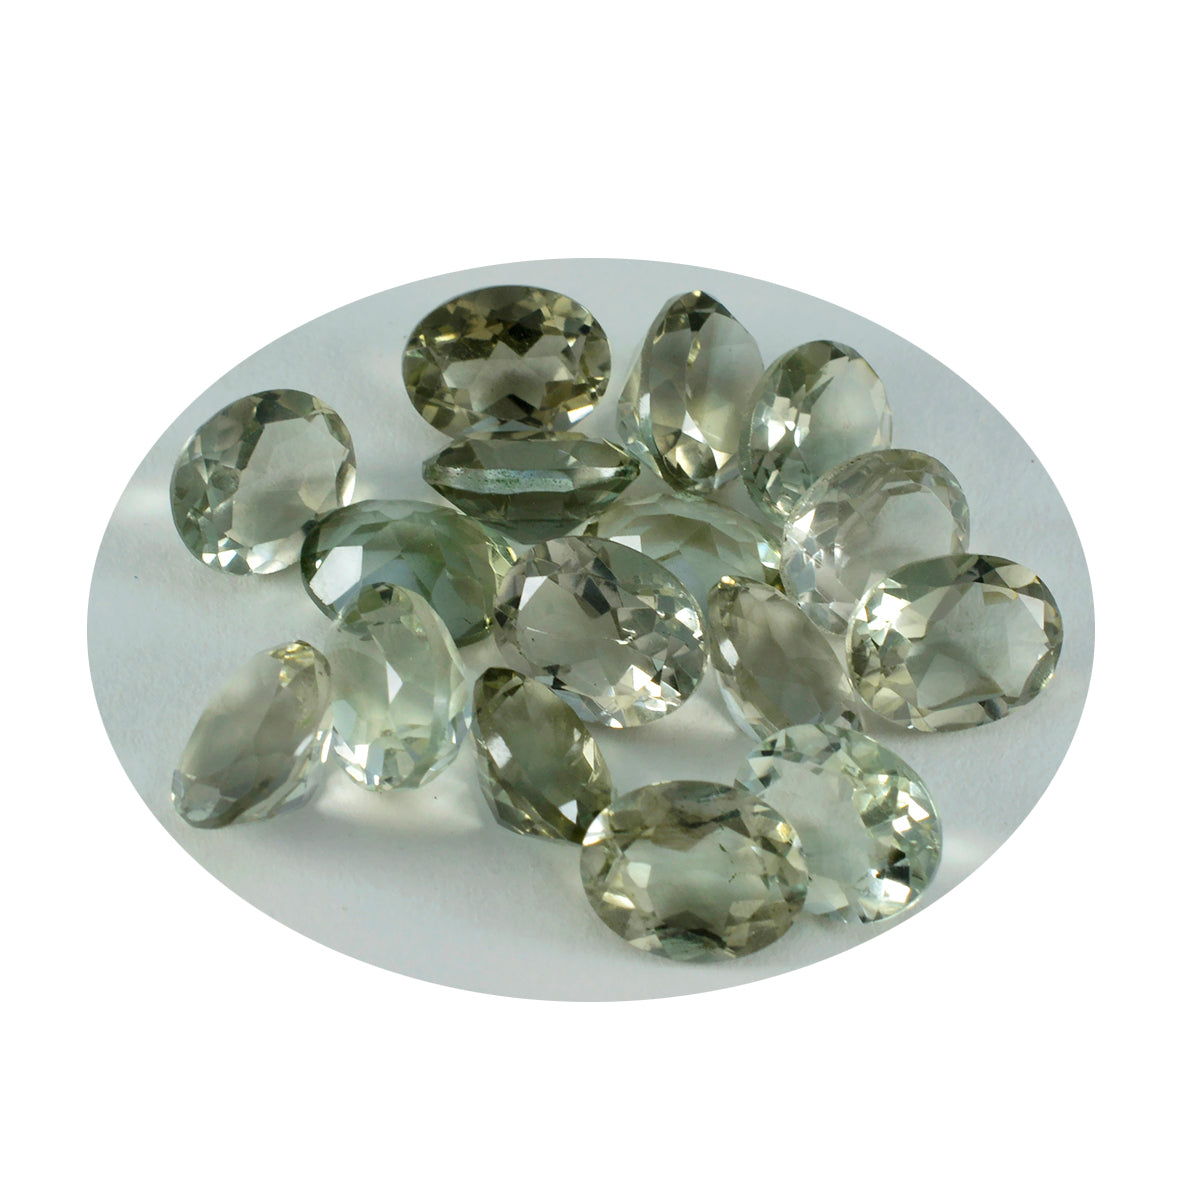 Riyogems 1PC Green Amethyst Faceted 4x6 mm Oval Shape wonderful Quality Stone